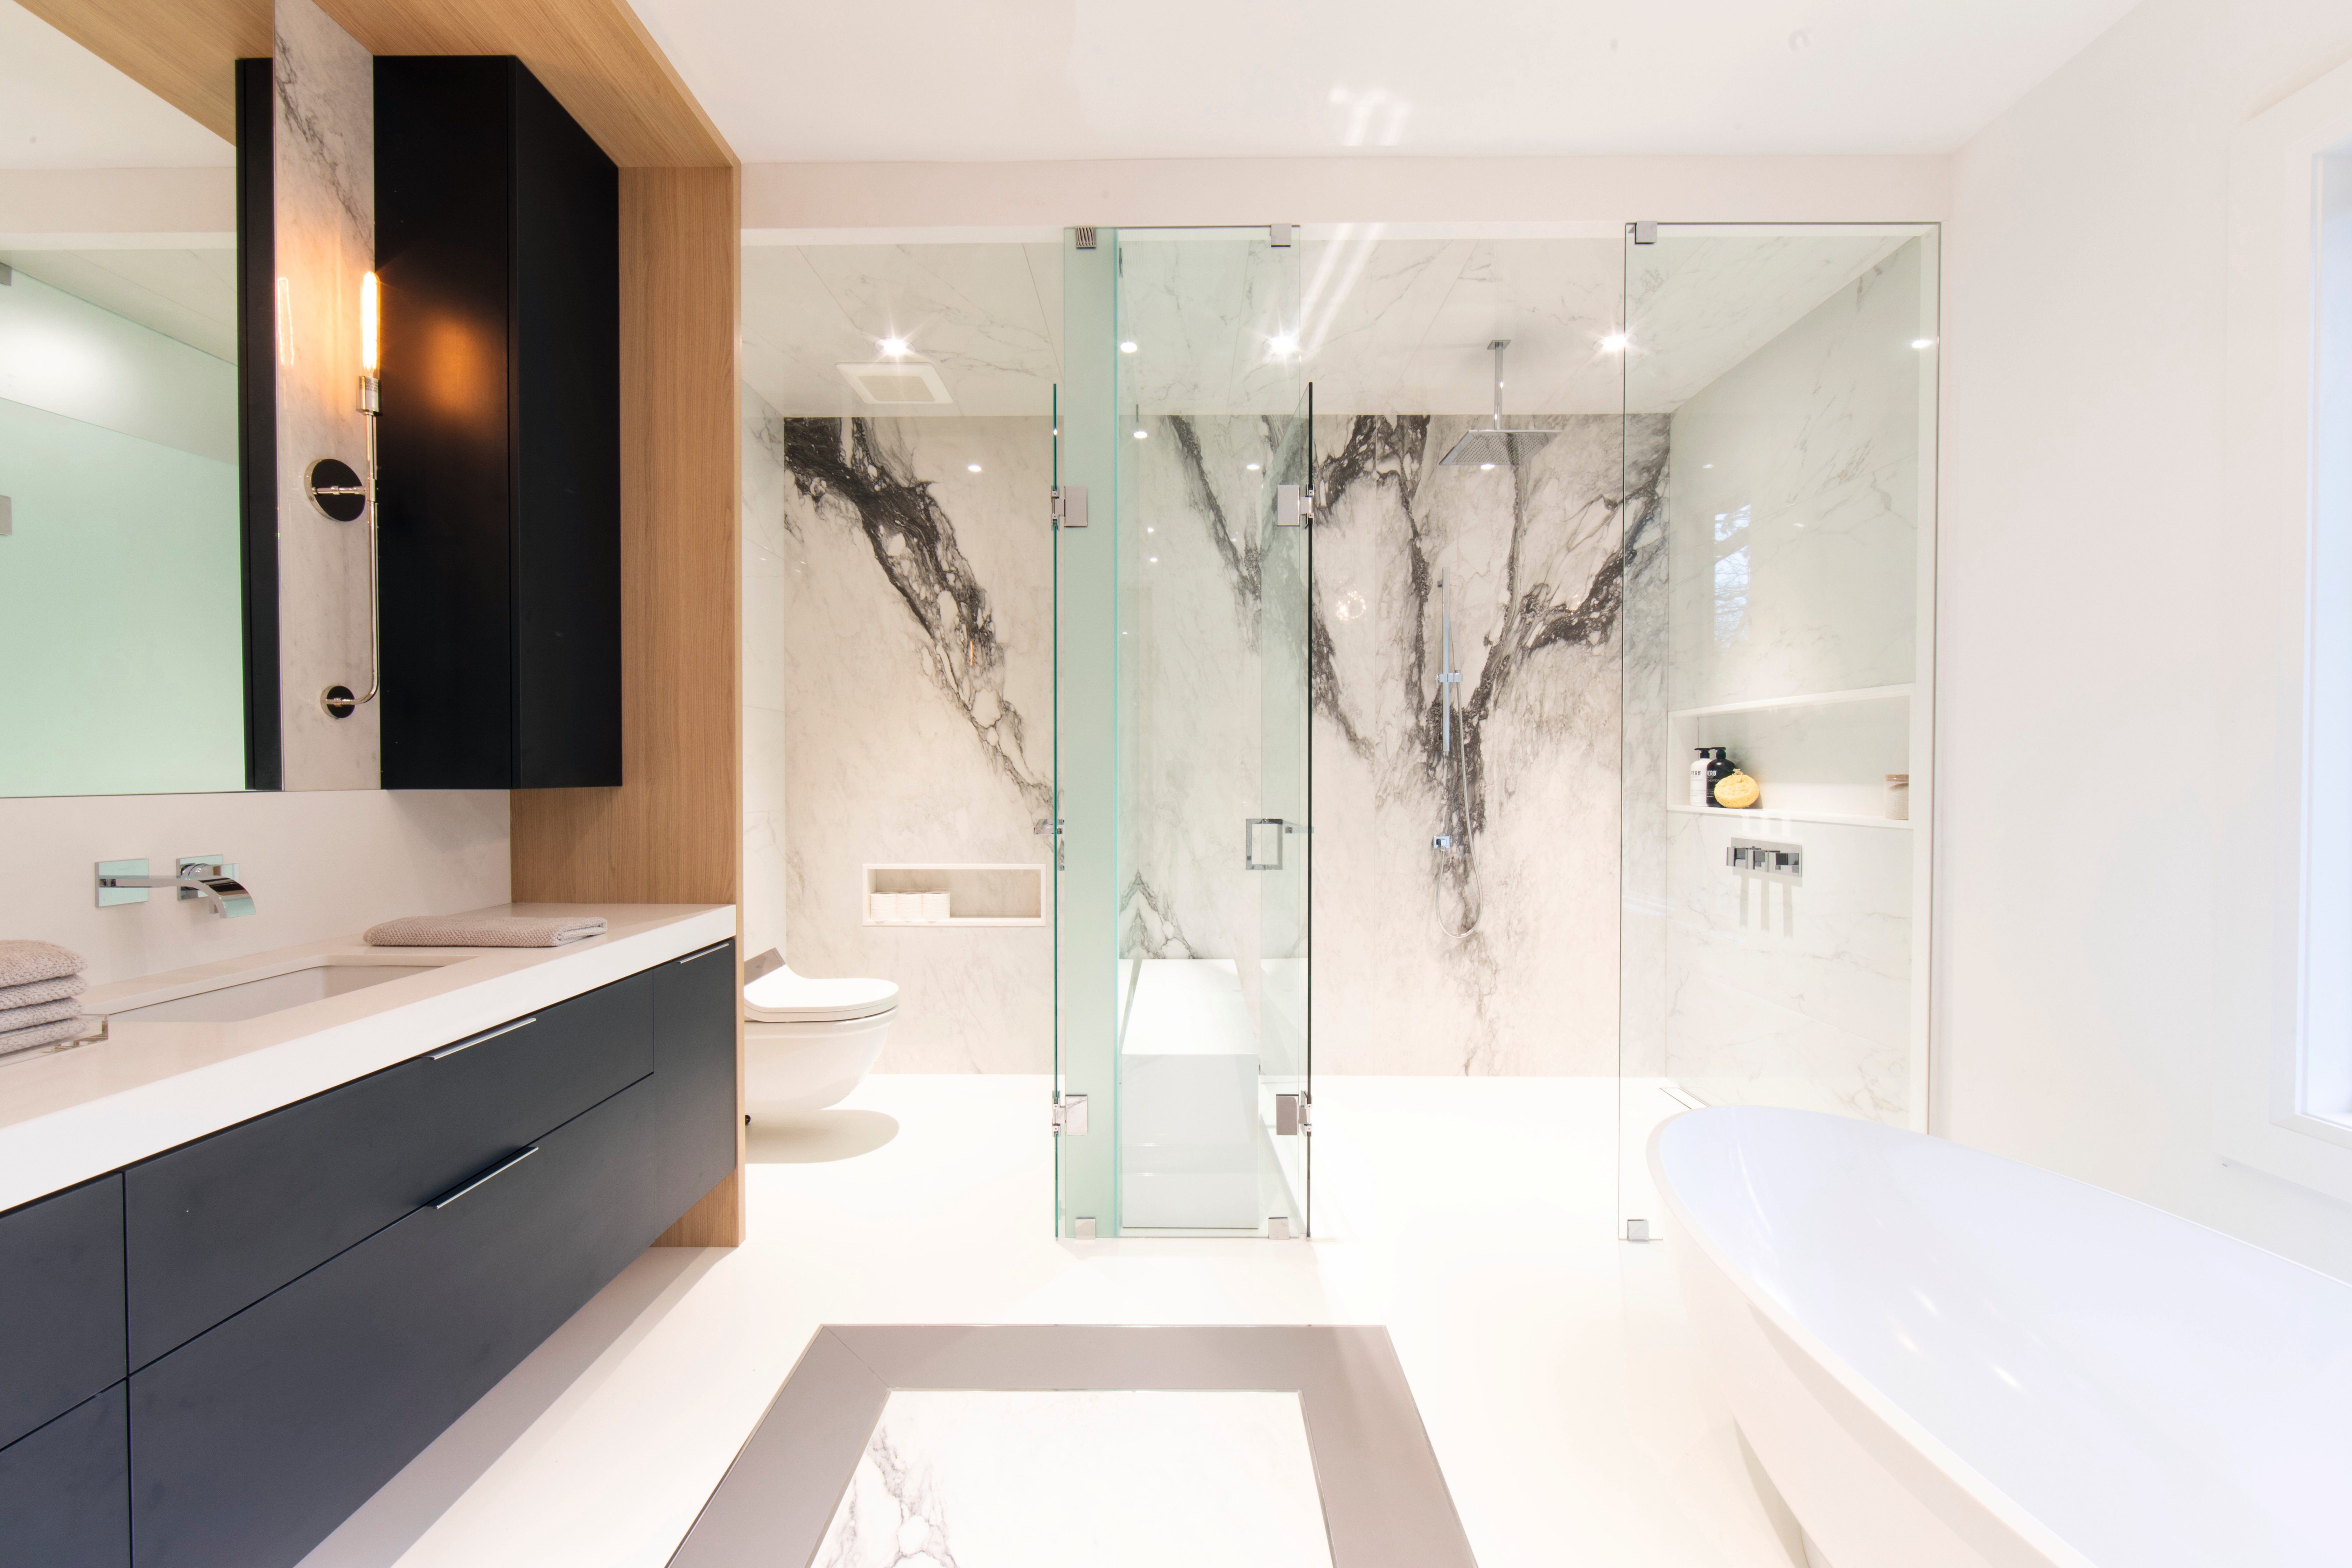 Schwarze Akzente gepaart mit heller Naturholzoptik und edlem Marmor verwandeln das Badezimmer in eine Wohlfühloase.